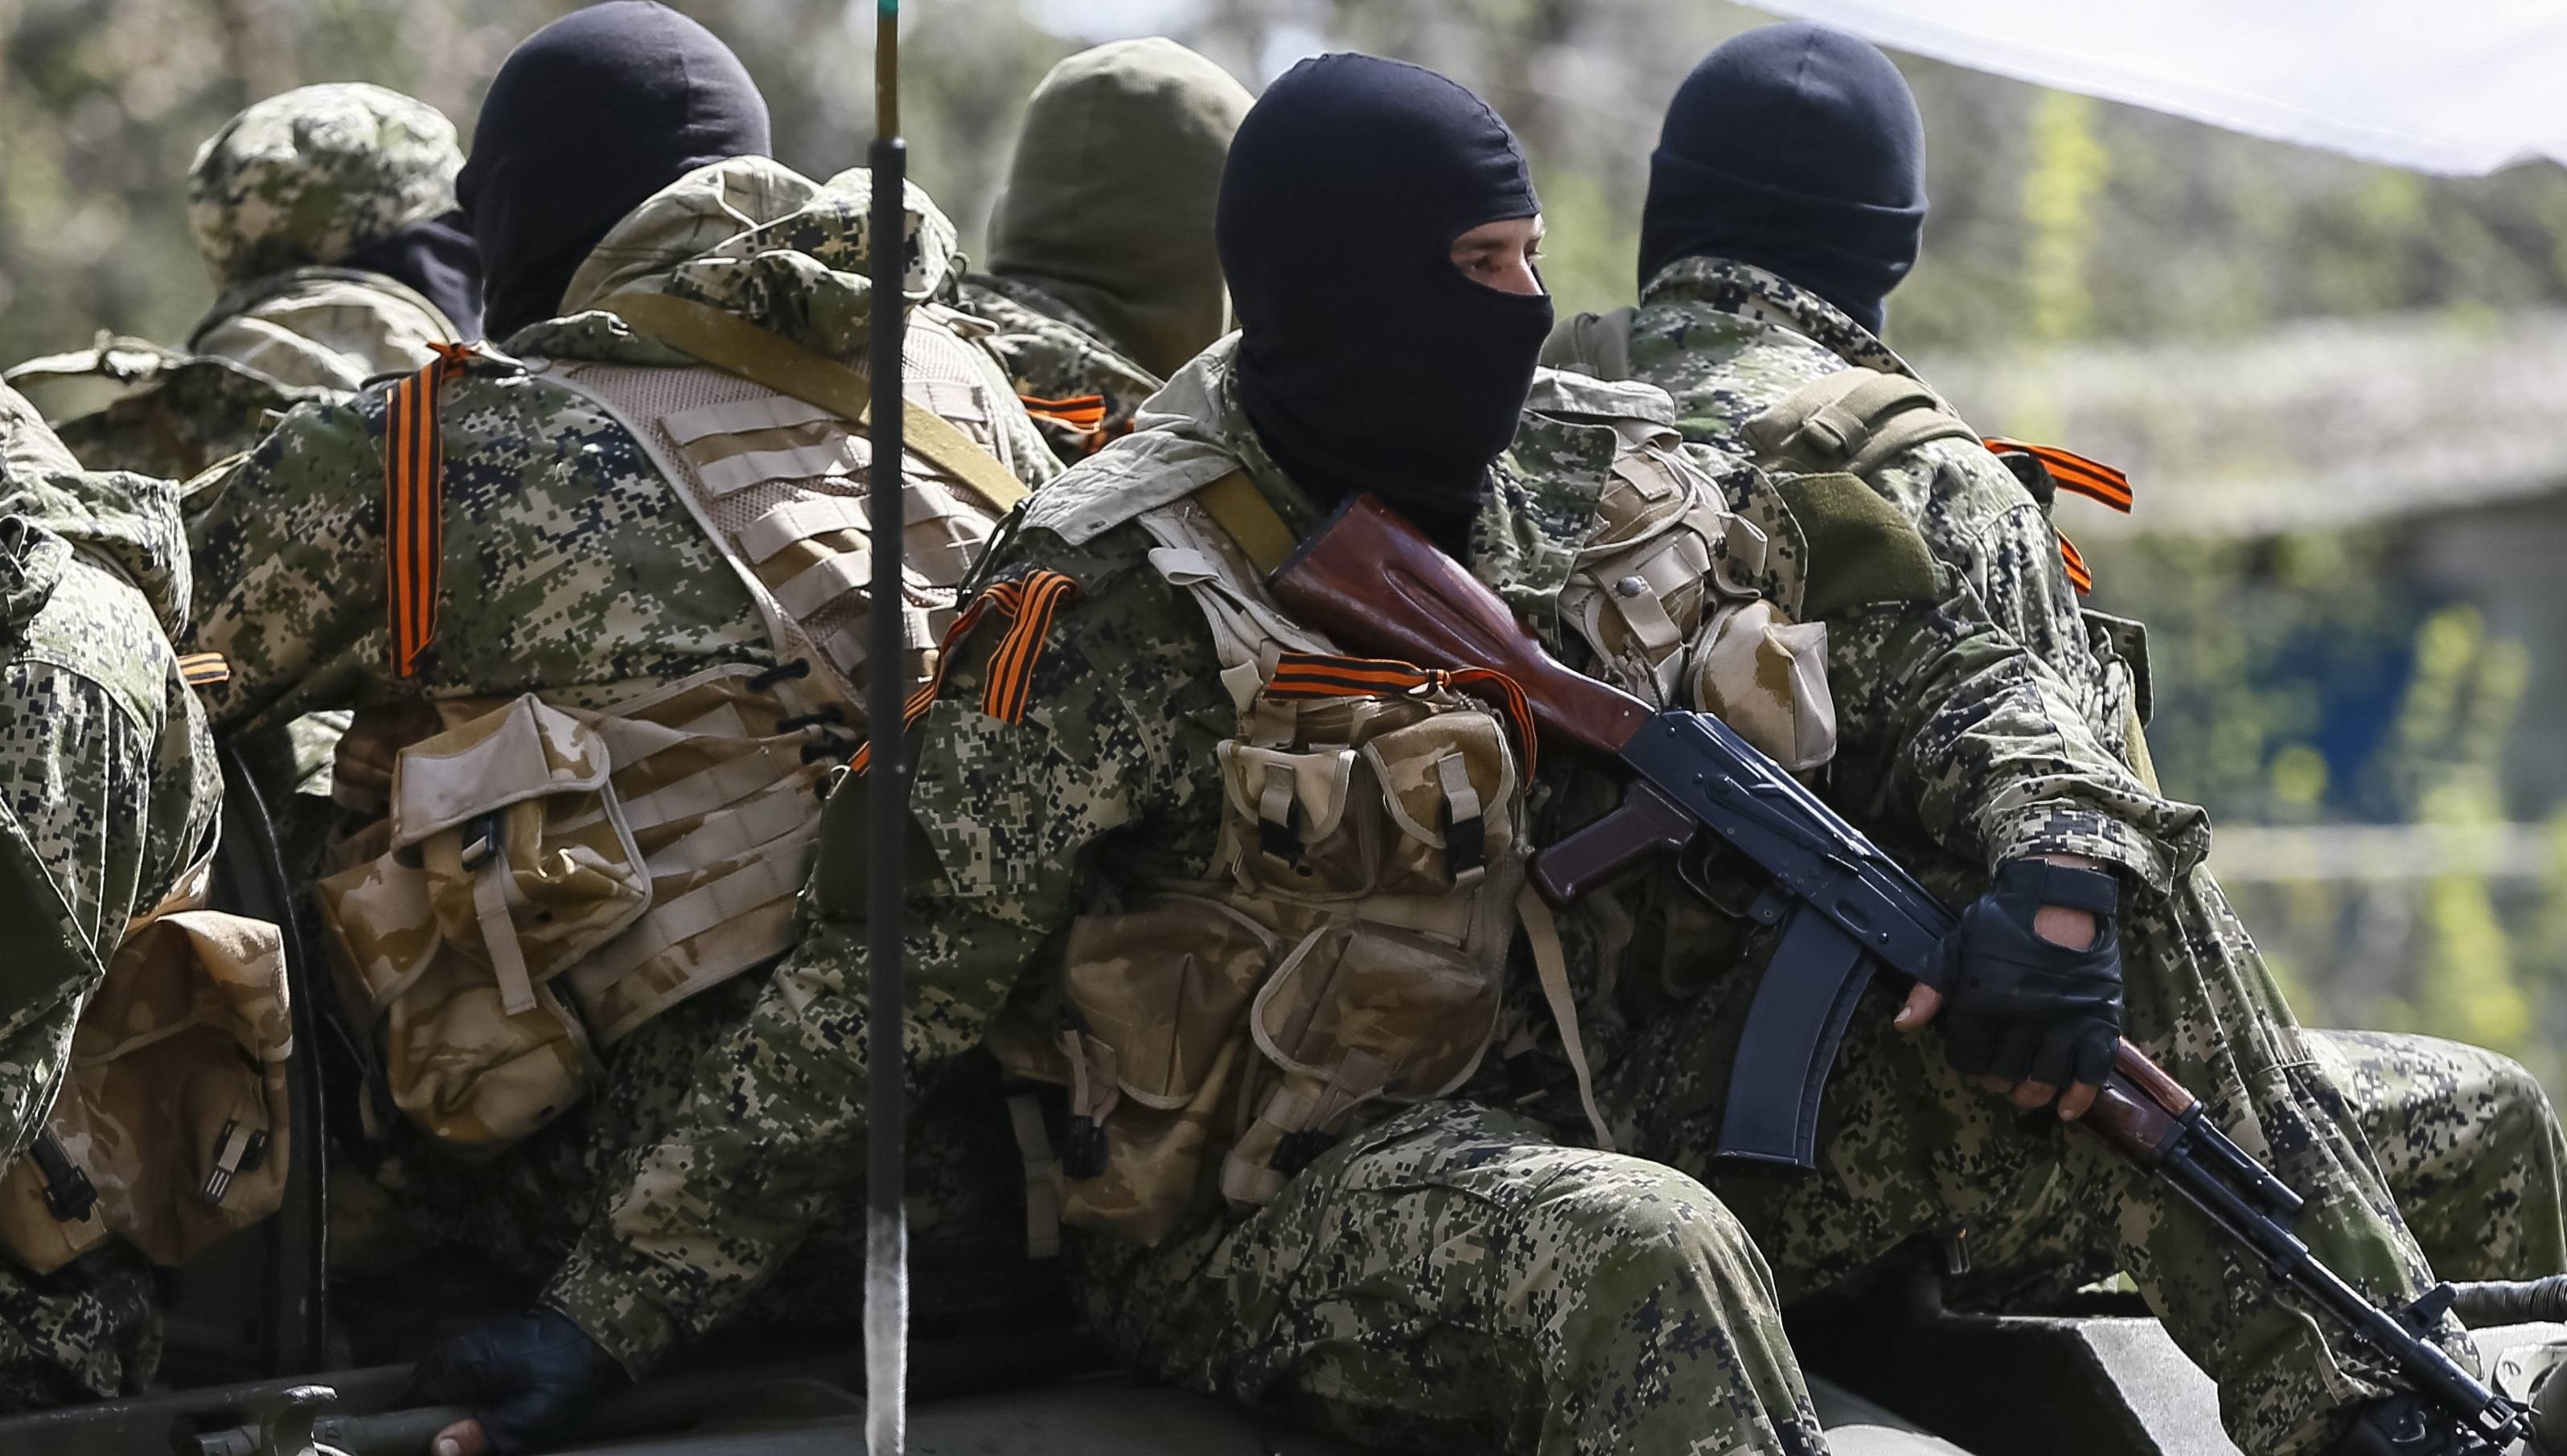 "Они их резали дерзко и хладнокровно", - журналист Юрий Бутусов рассказал подробности спецоперации по уничтожению путинских диверсантов на Донбассе